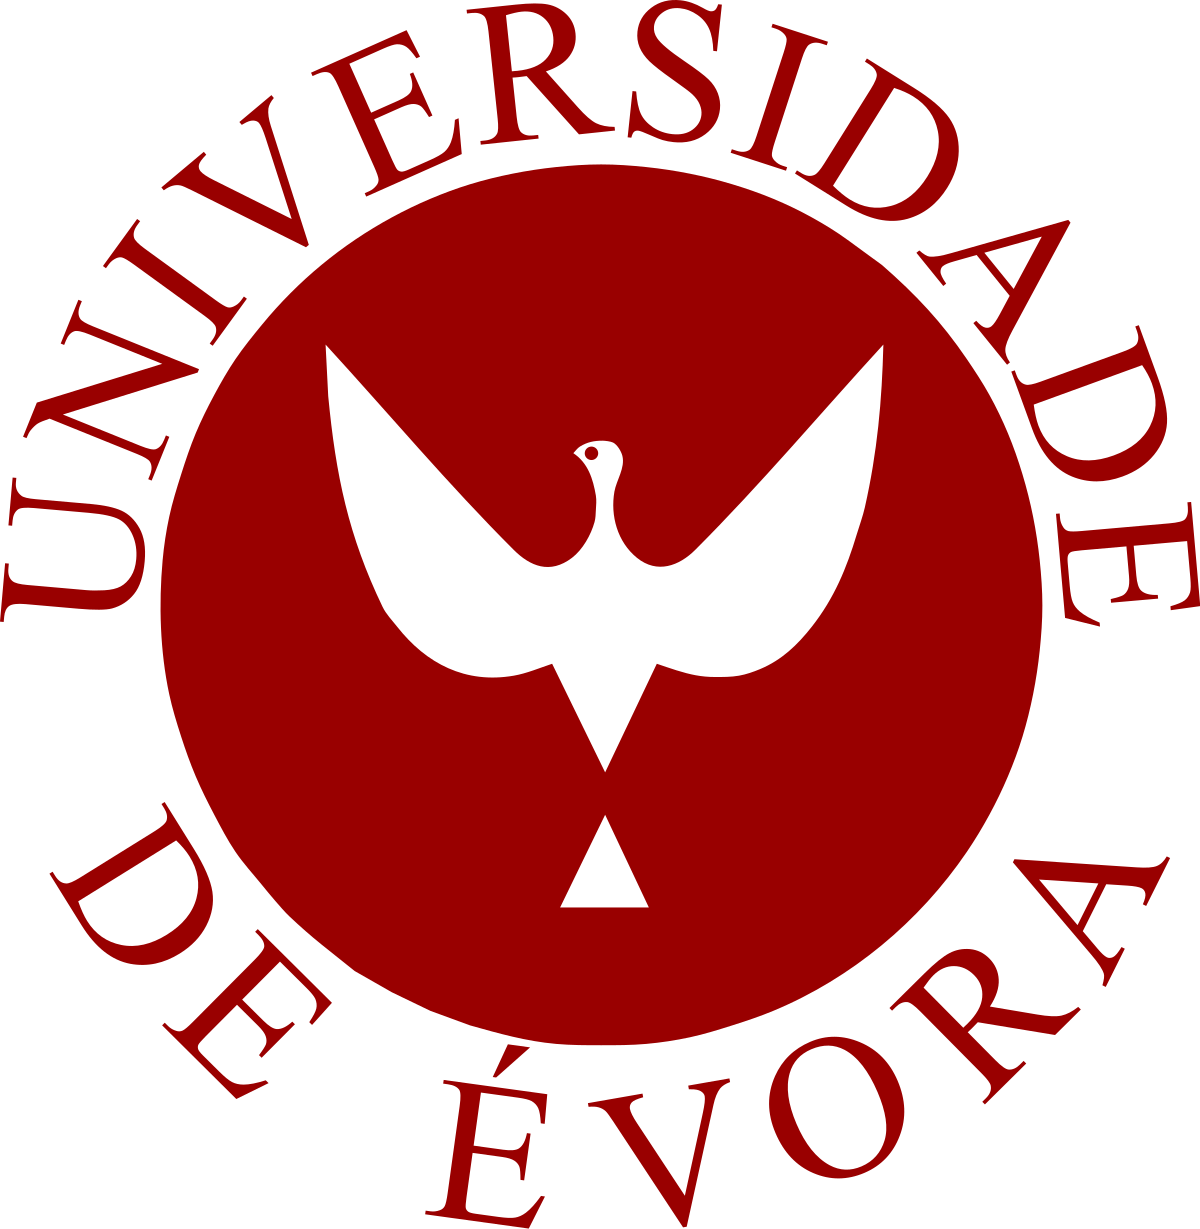 evora university logo